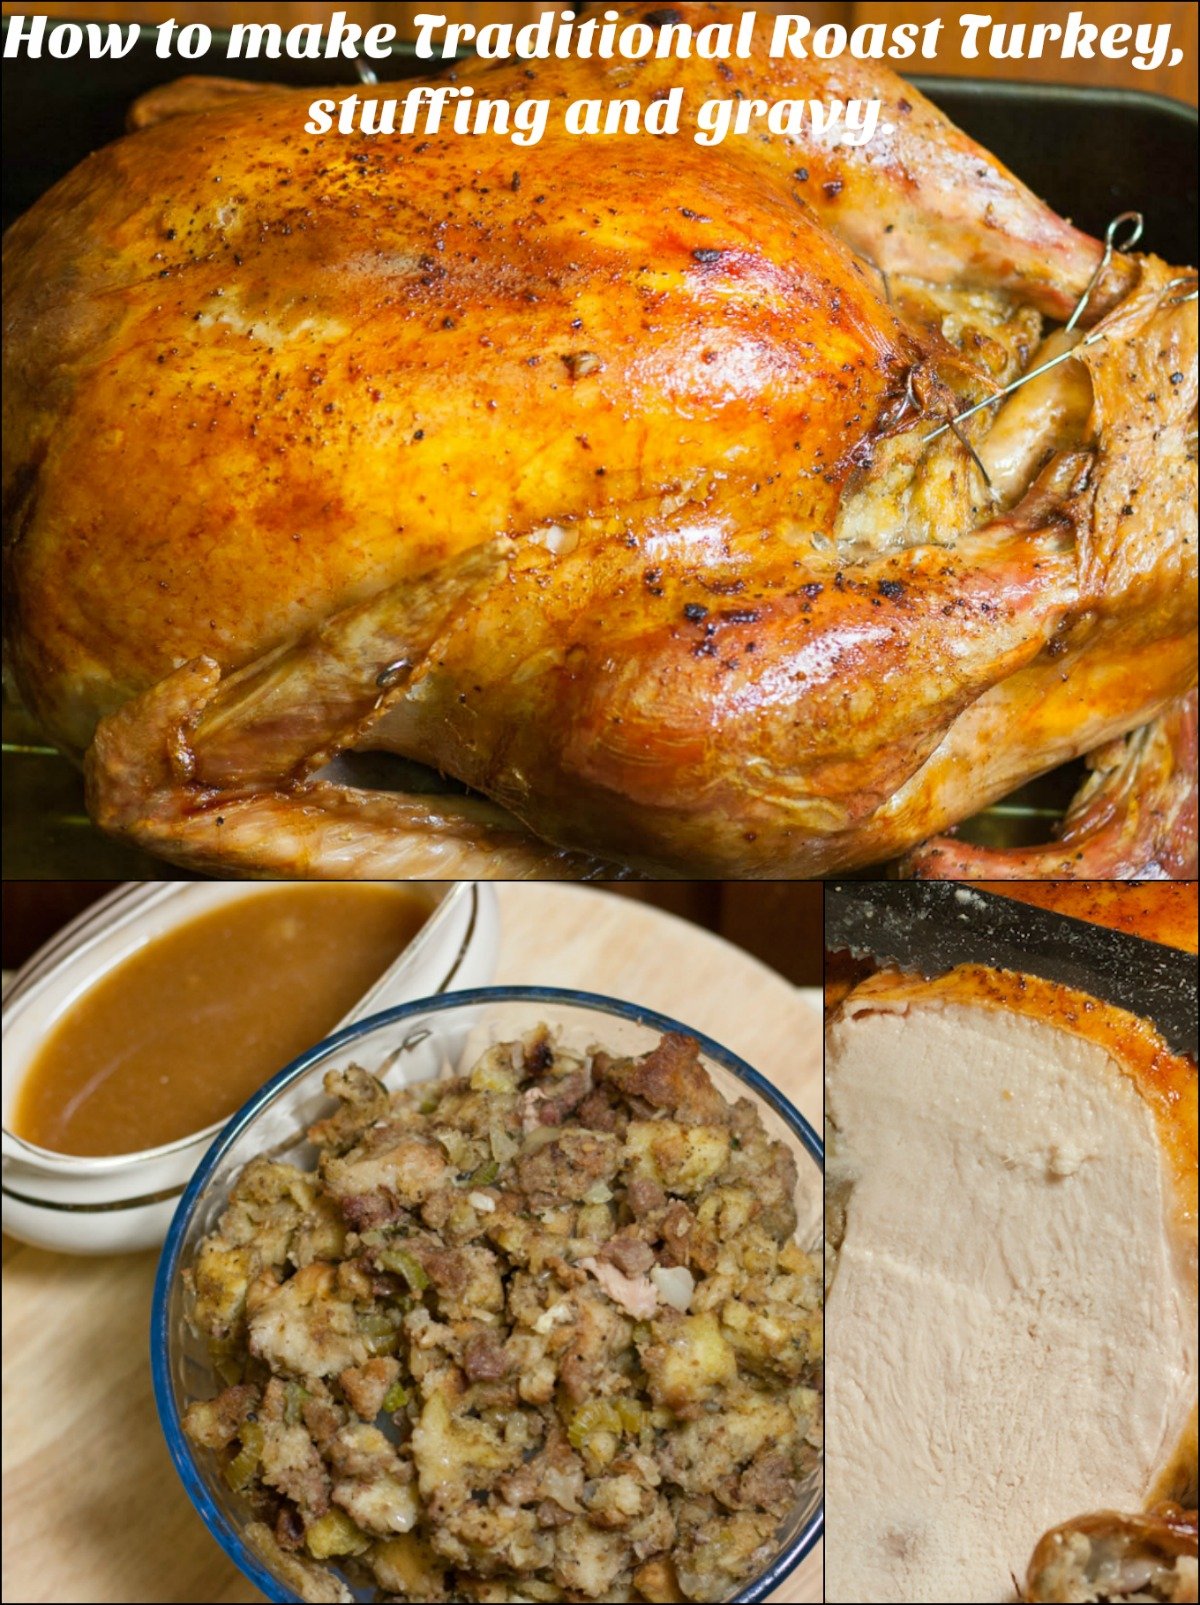 Roast turkey, stuffing and gravy